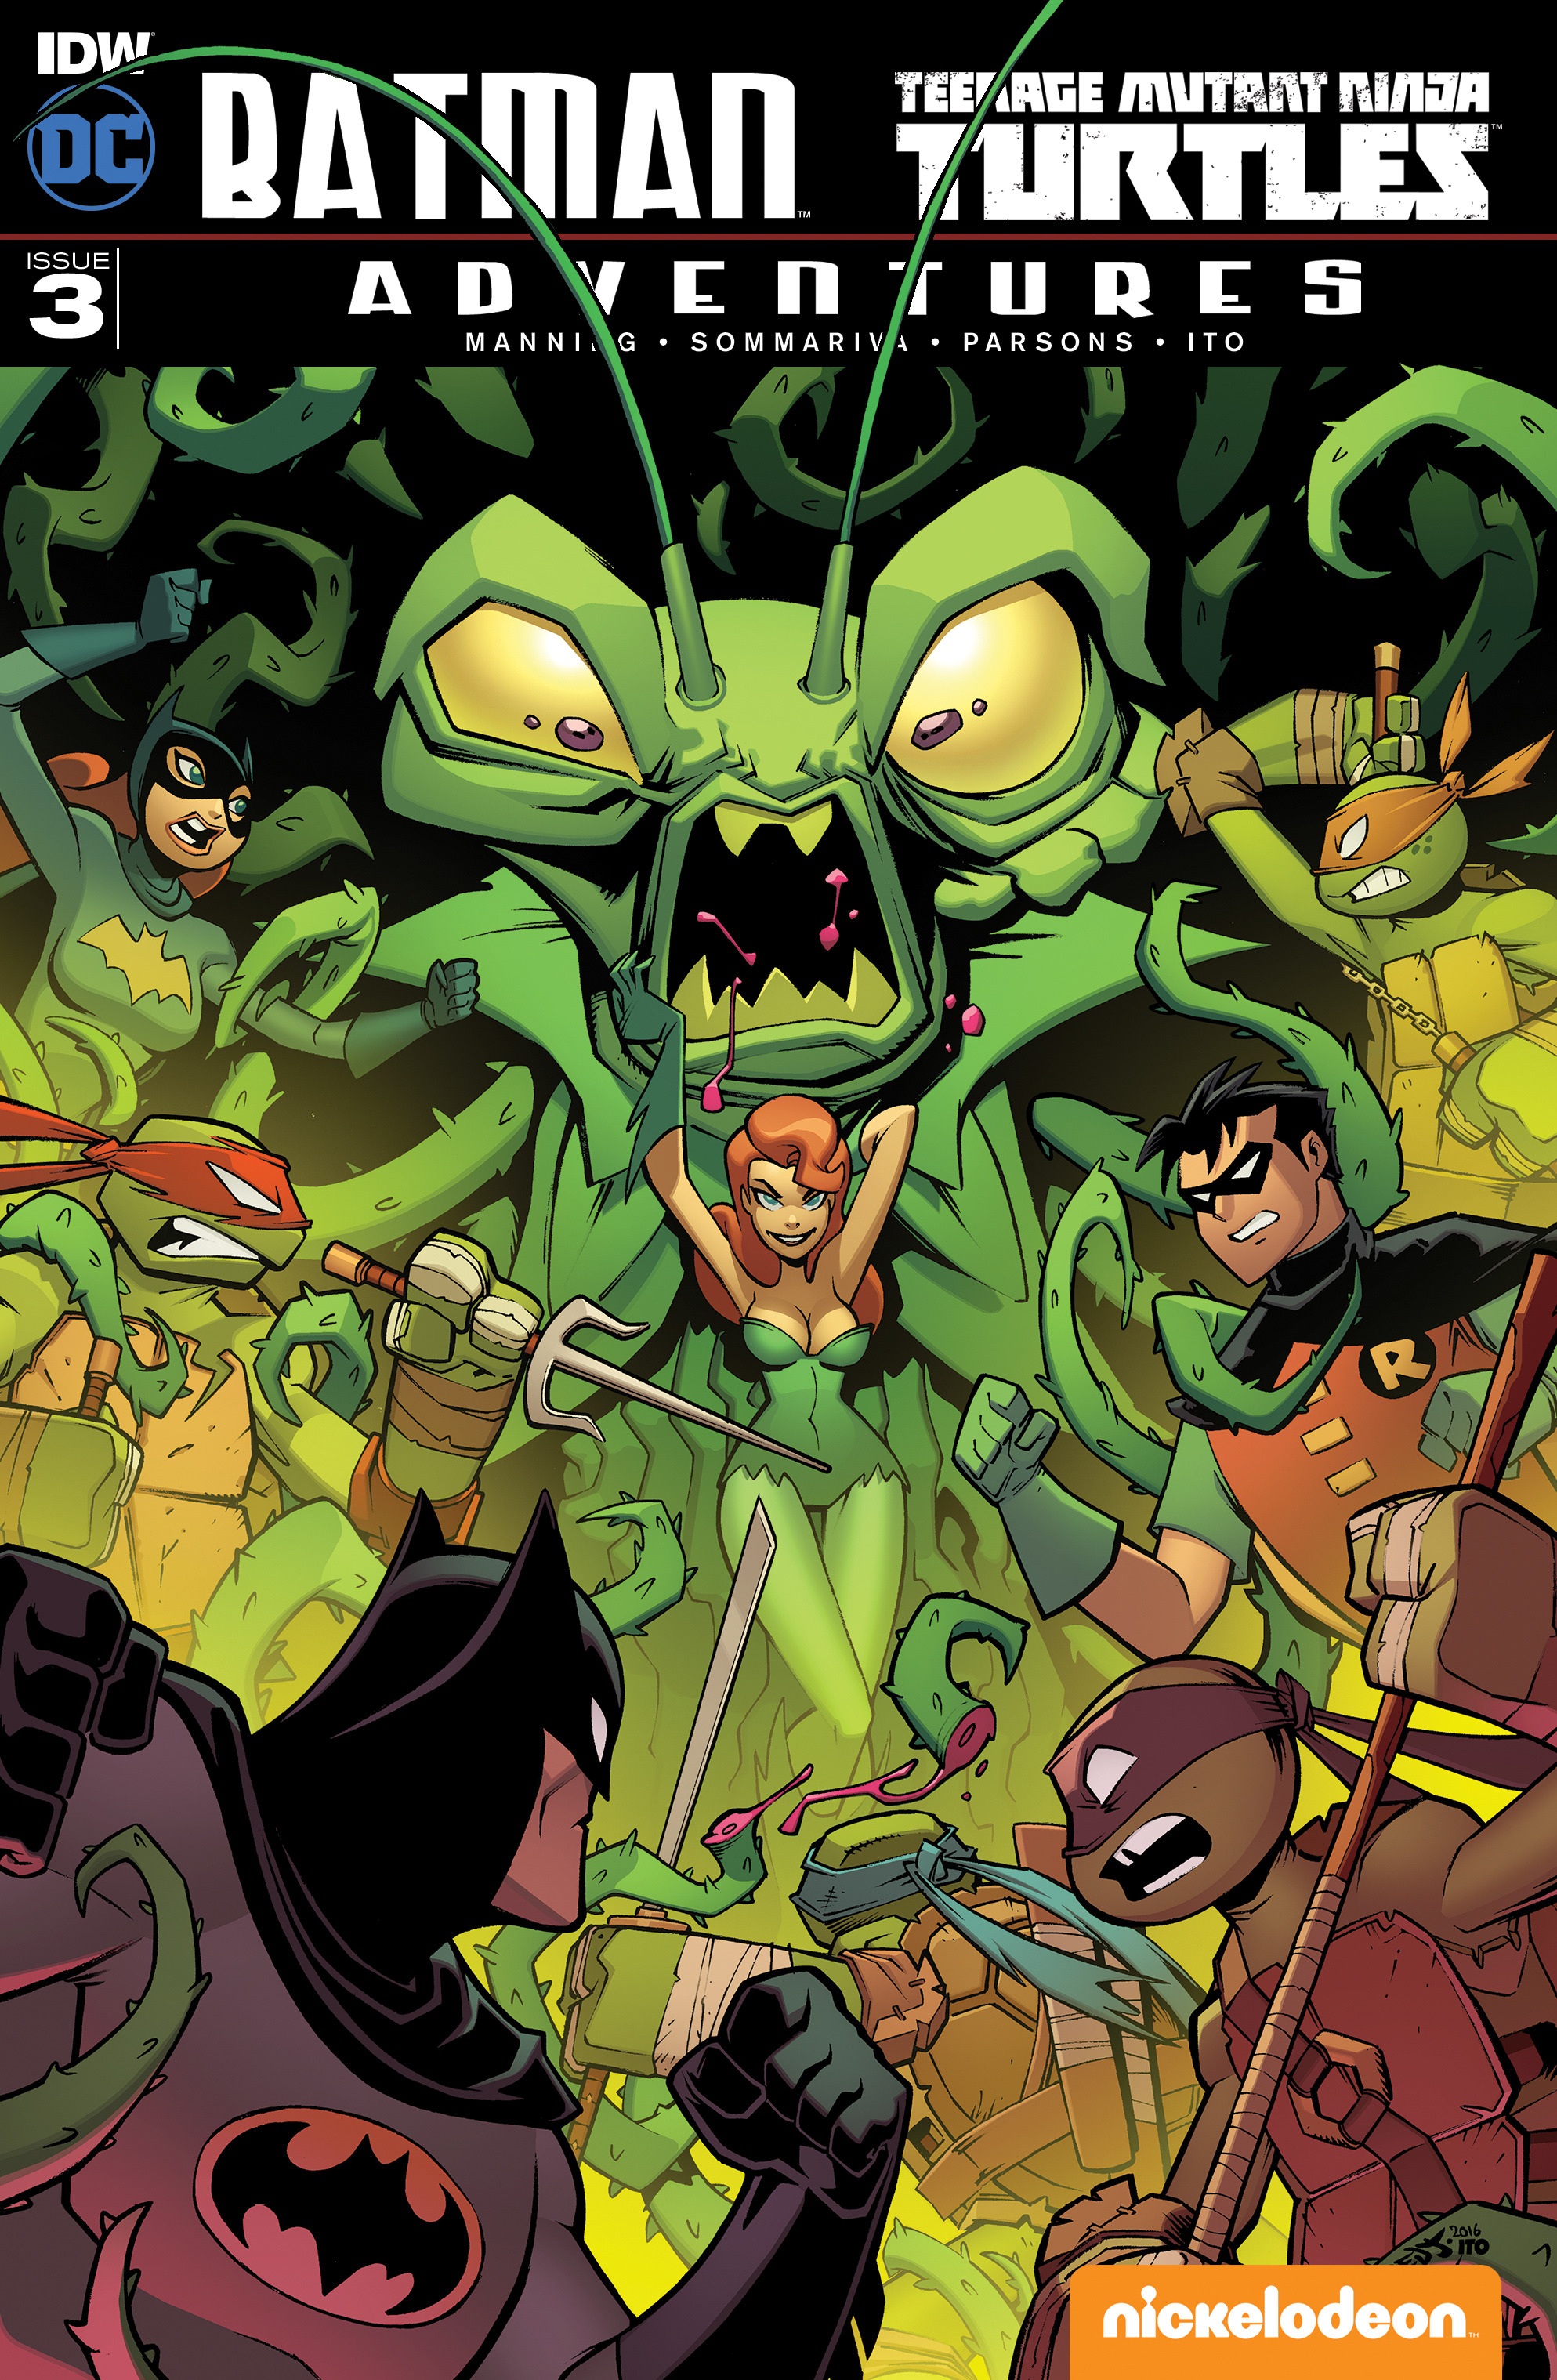 Read online Batman/Teenage Mutant Ninja Turtles Adventure comic -  Issue #3 - 1